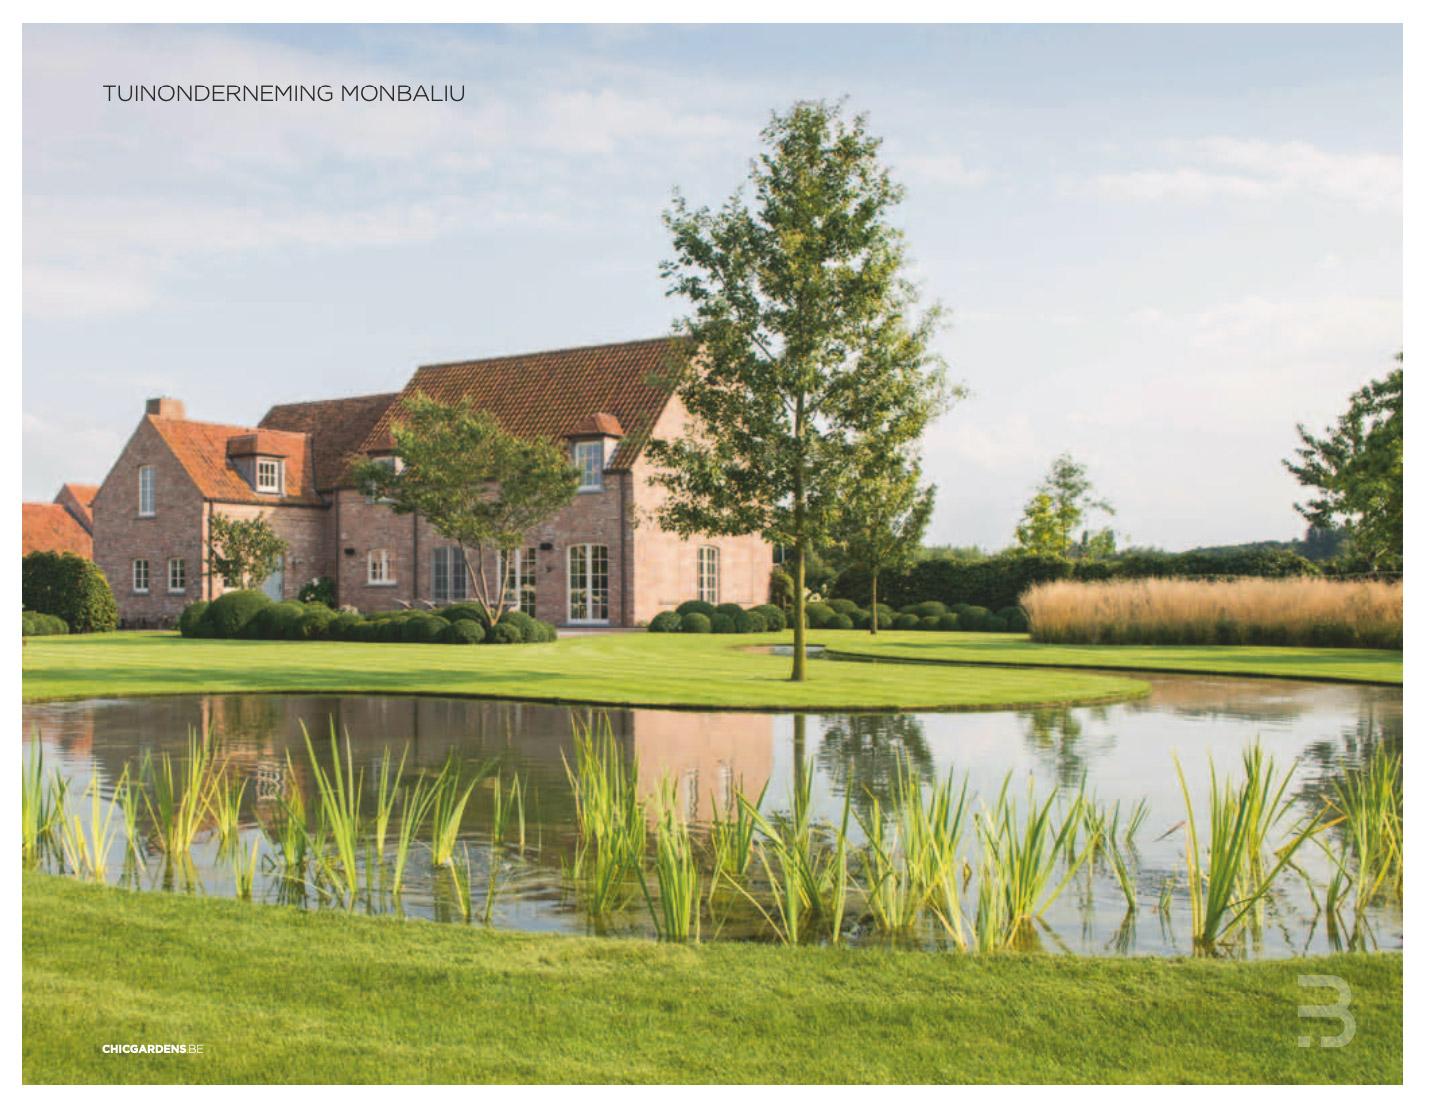 Afbeelding nieuwsitem Magazine ‘Concept gardens’ – bijlage regio West-Vlaanderen